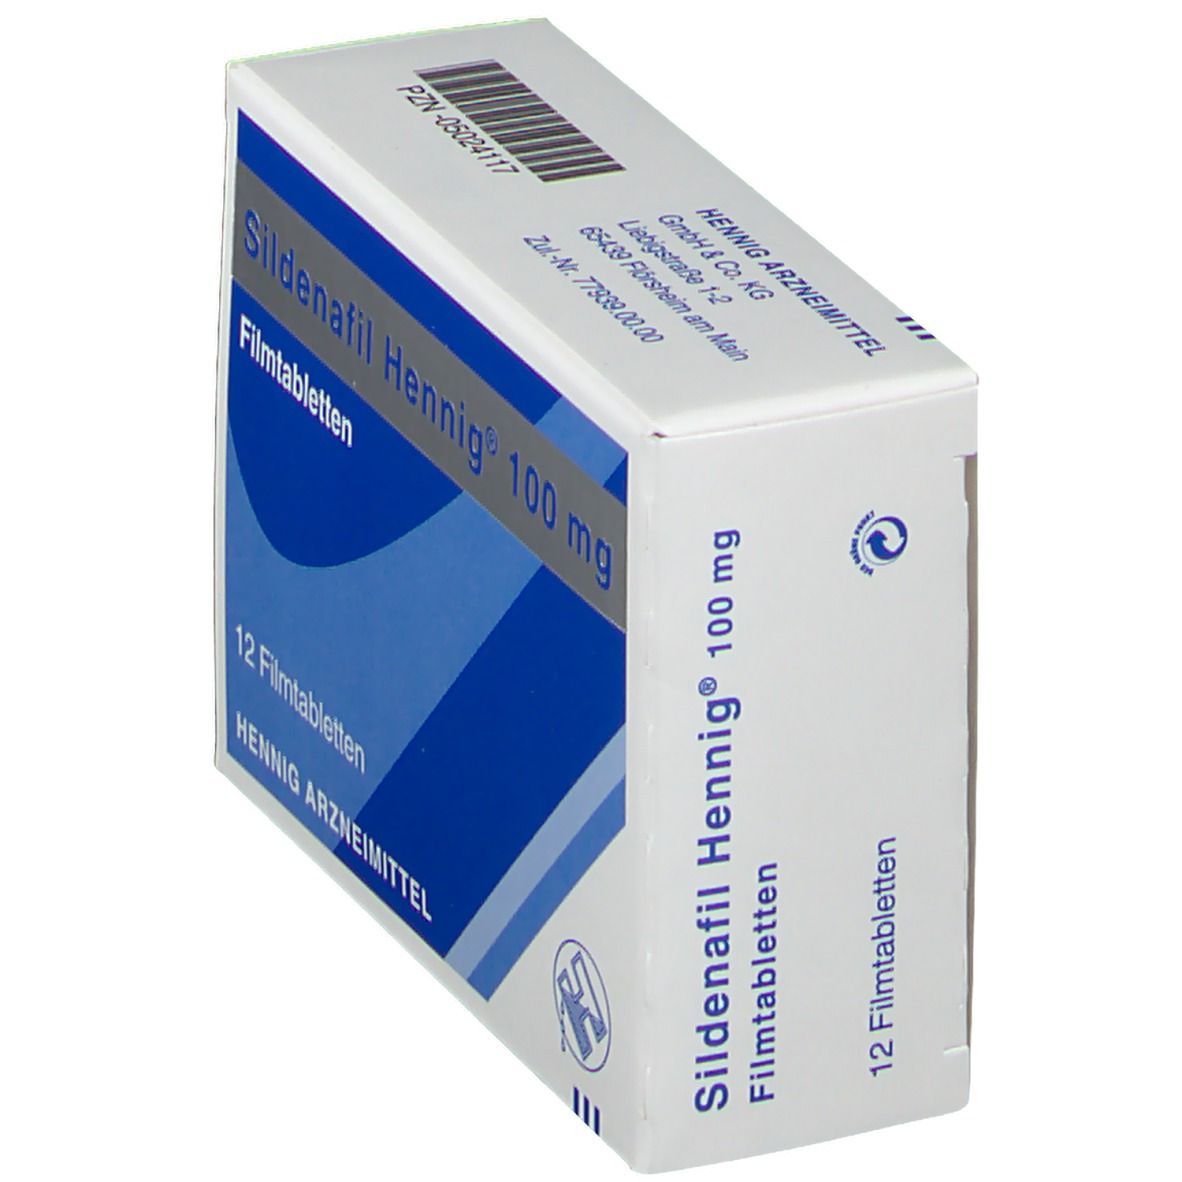 Sildenafil Hennig® 100 mg